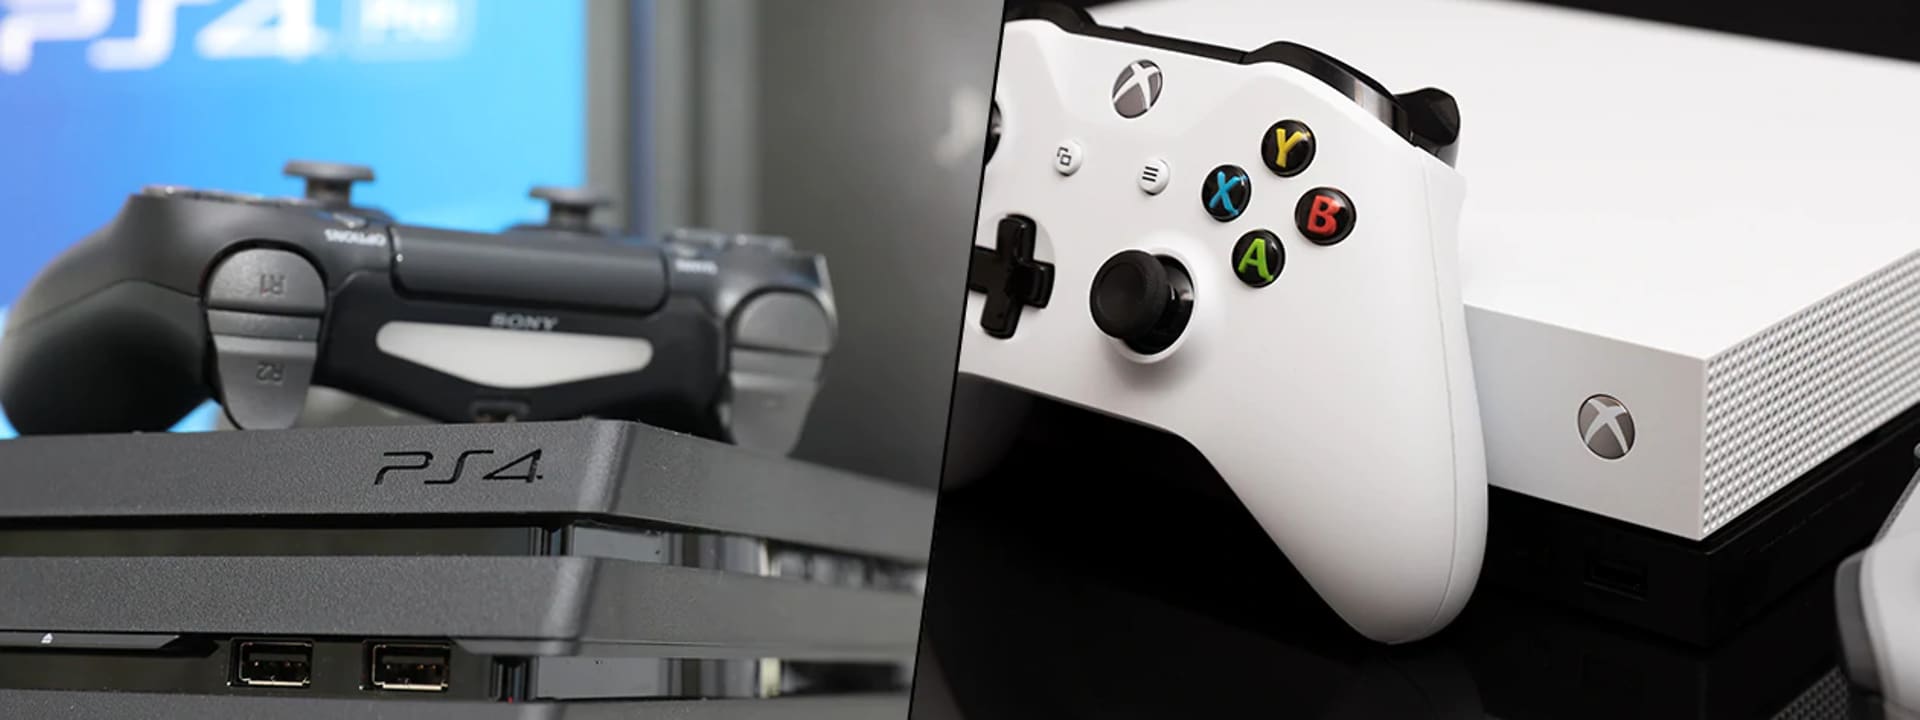 Arving Cyberplads Erobring Xbox One X eller PlayStation 4 Pro – hvilken skal du velge? | Elkjøp